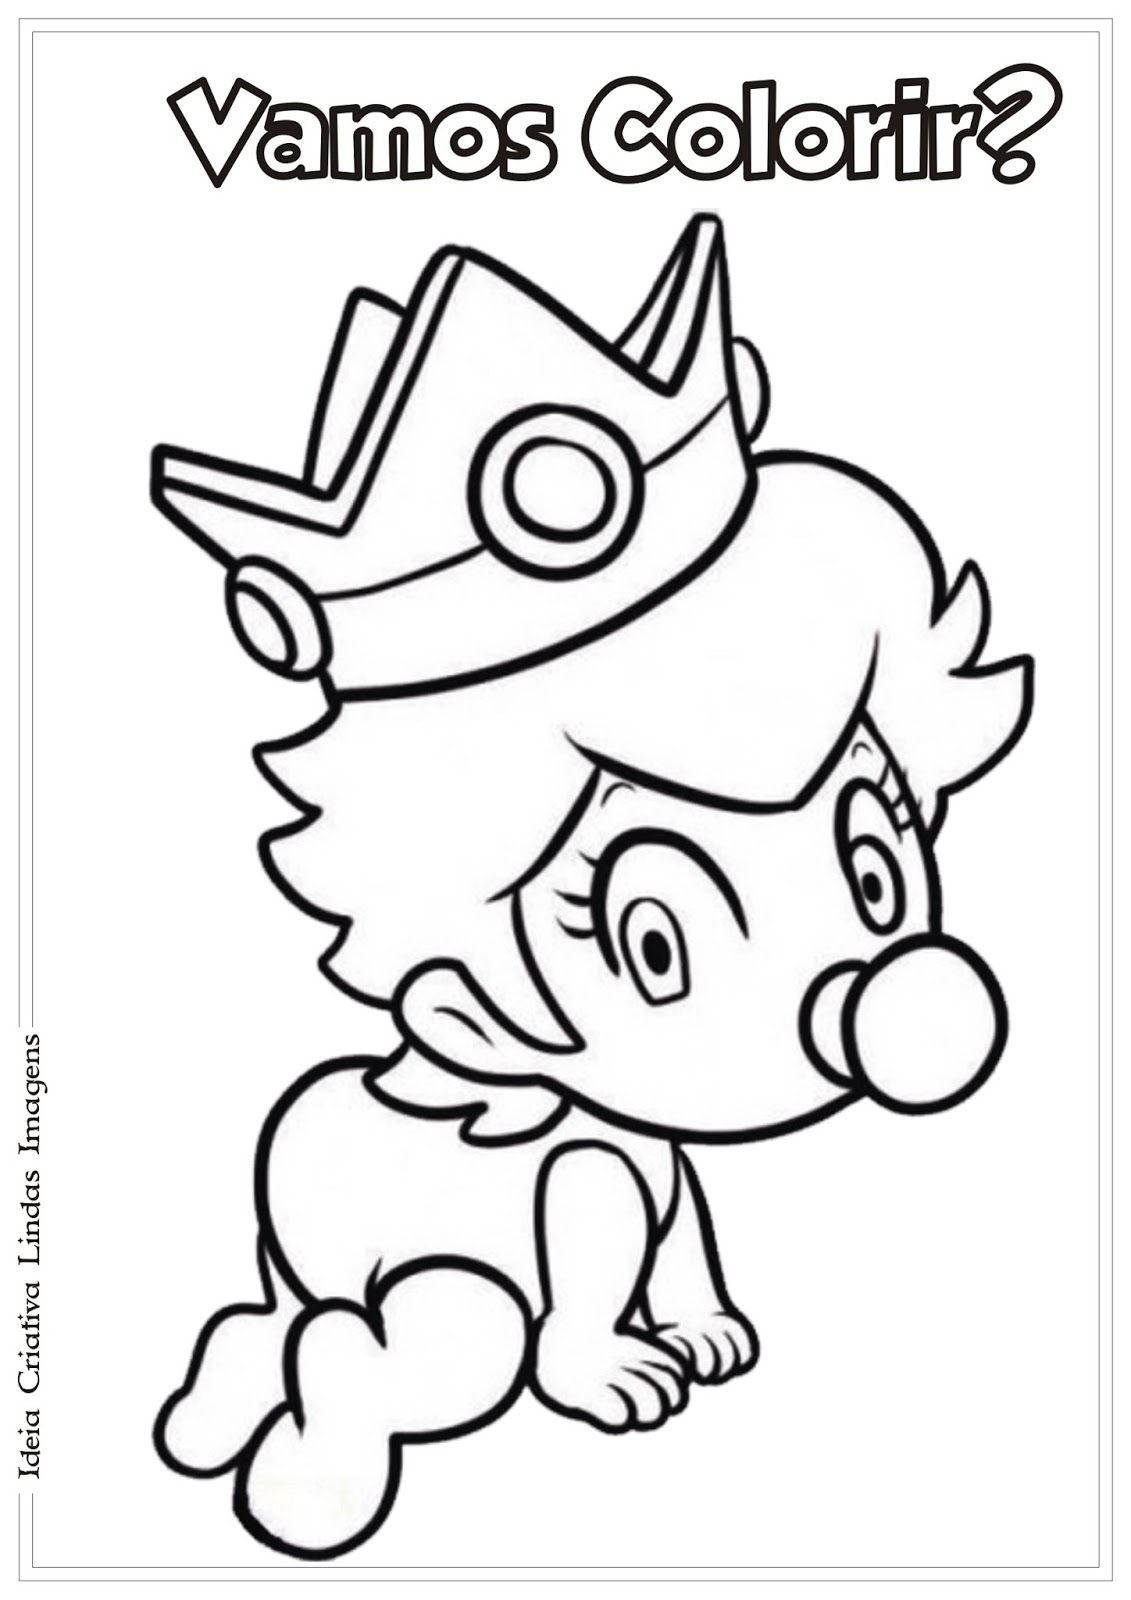 Desenho de Bowser Jr. para colorir  Desenhos para colorir e imprimir gratis